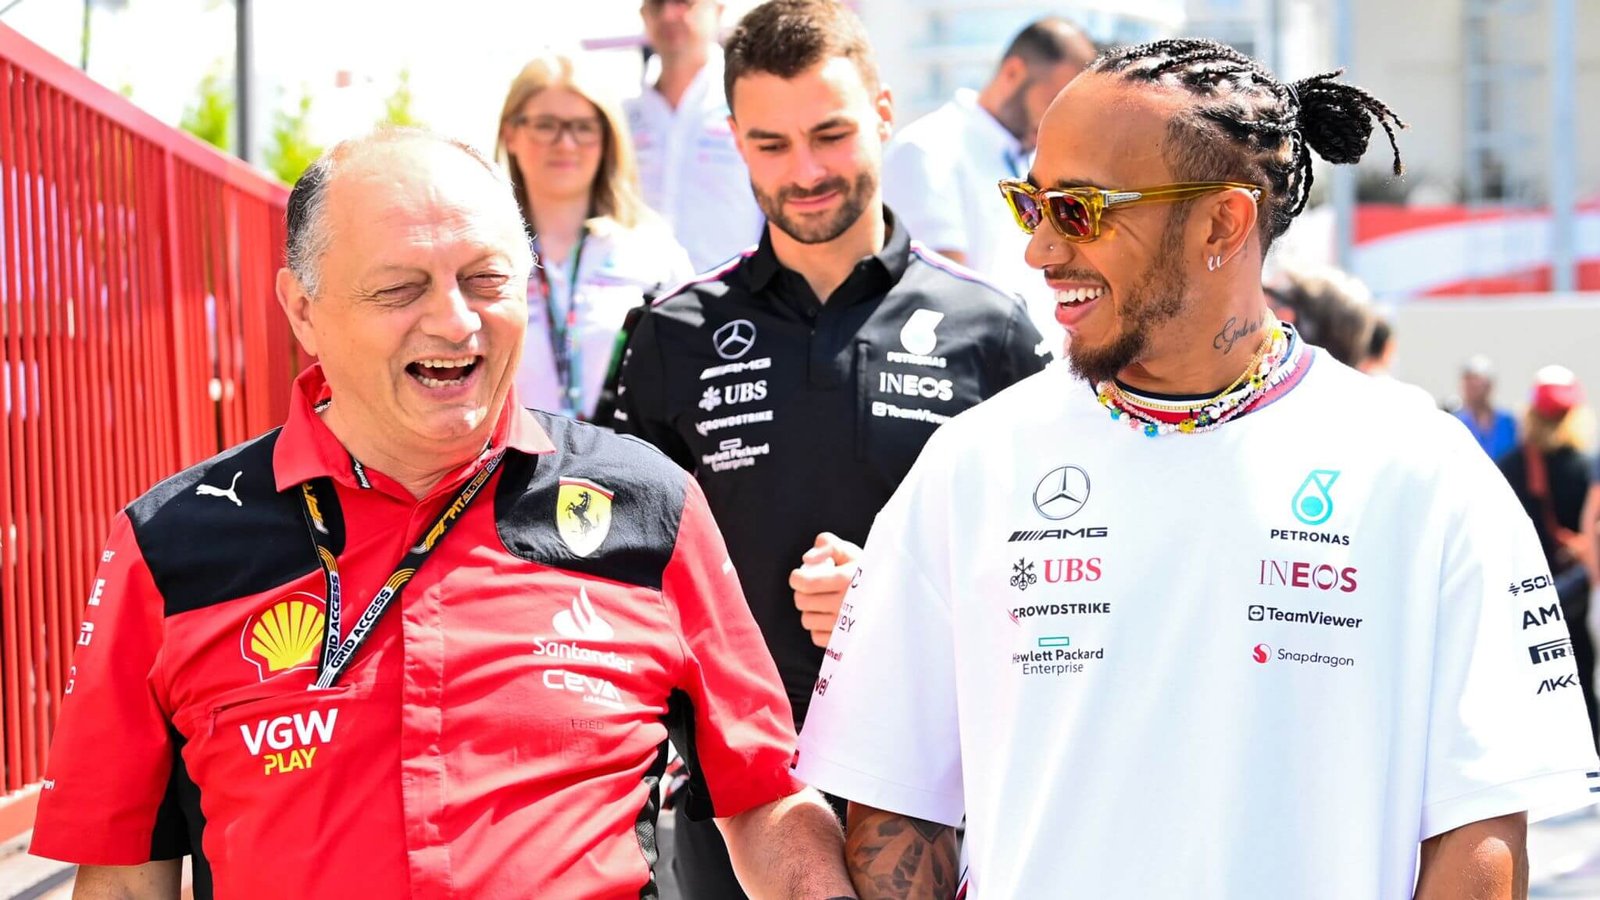 Proposta incisiva de John Elkann para Lewis Hamilton motivou a troca da Mercedes pela Ferrari